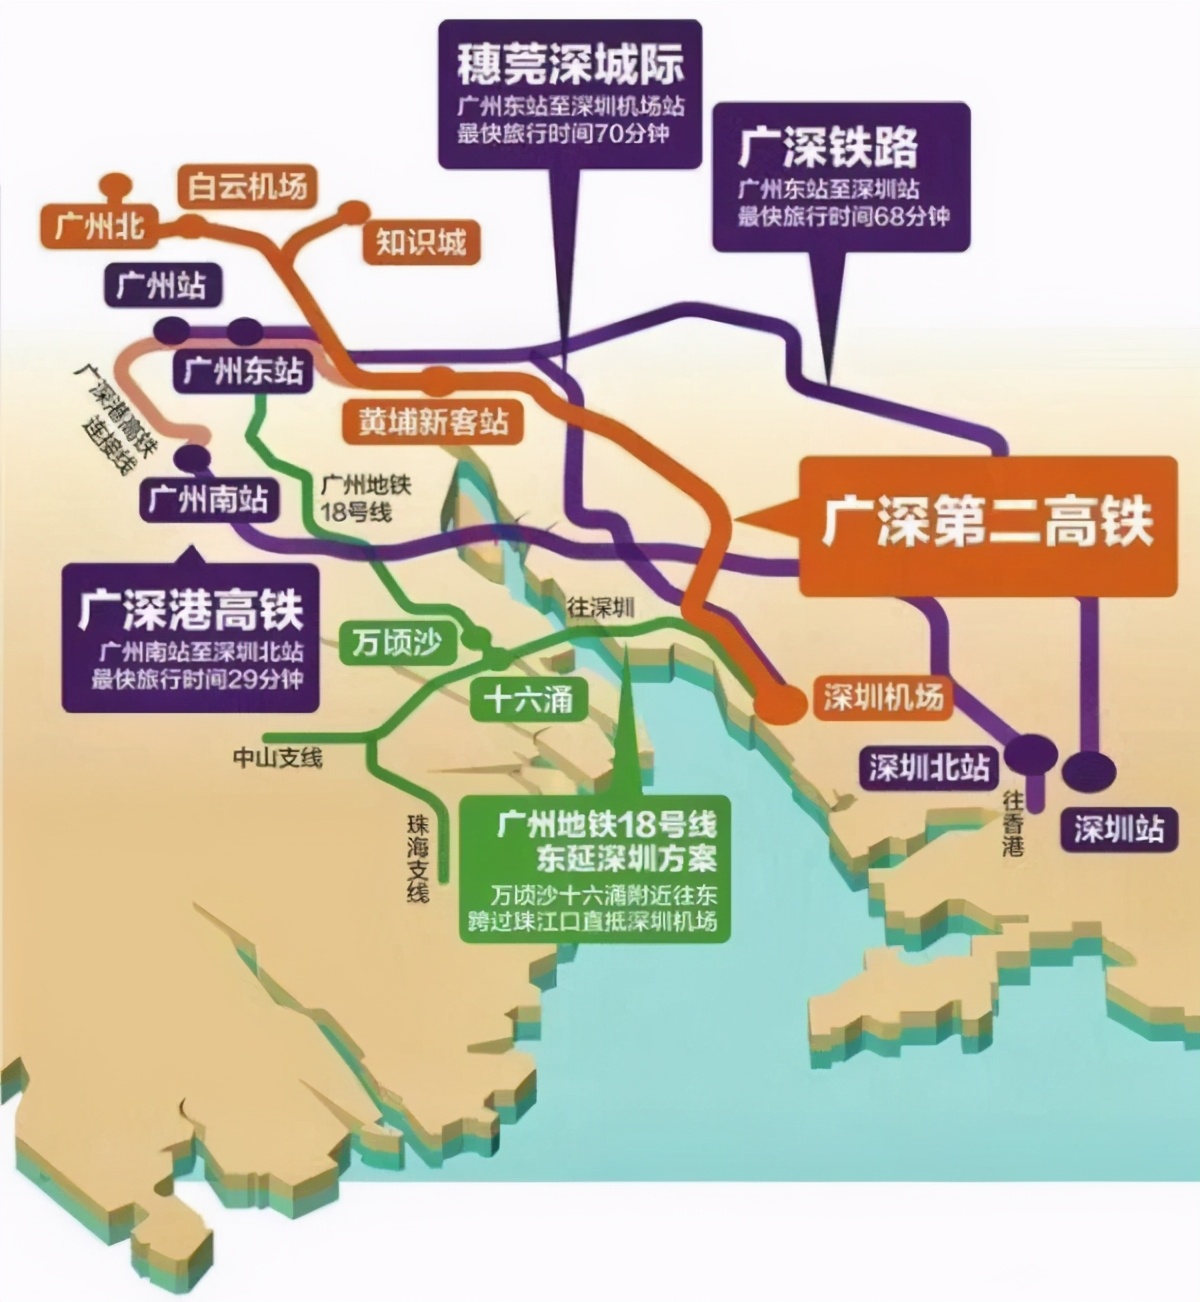 广东铁路地图2020,广东高铁线路图_大山谷图库